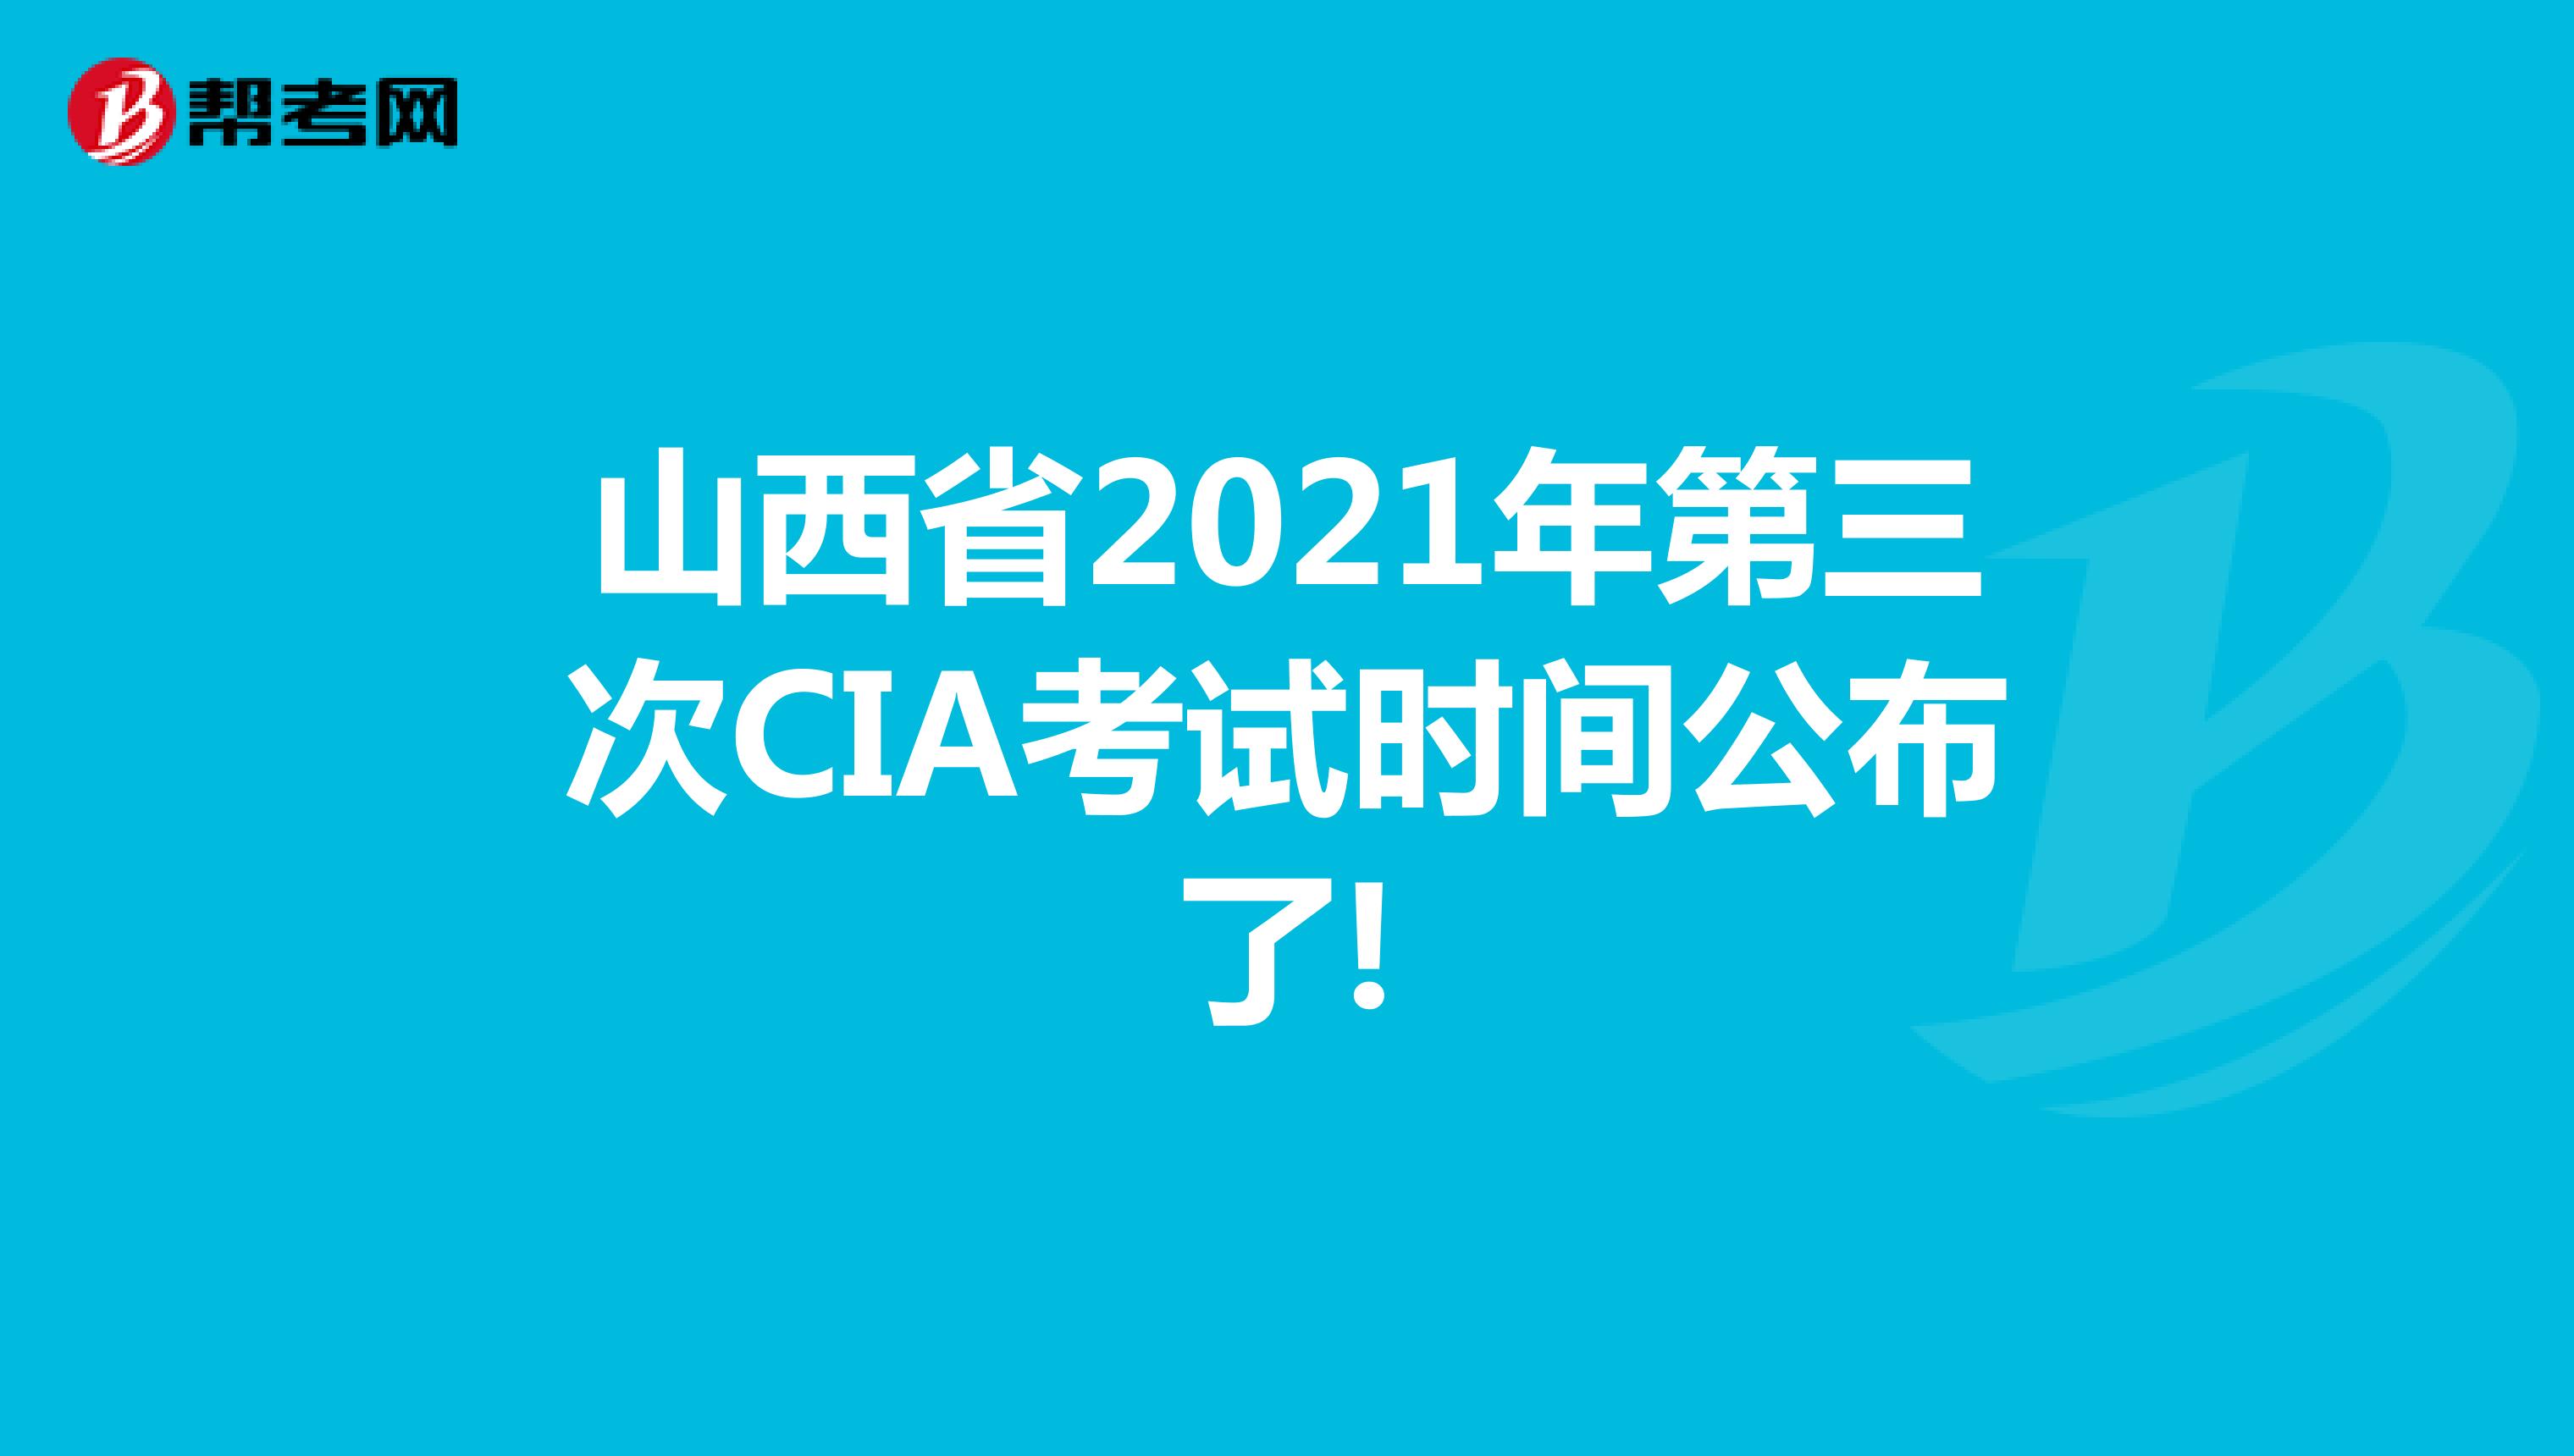 山西省2021年第三次CIA考试时间公布了!